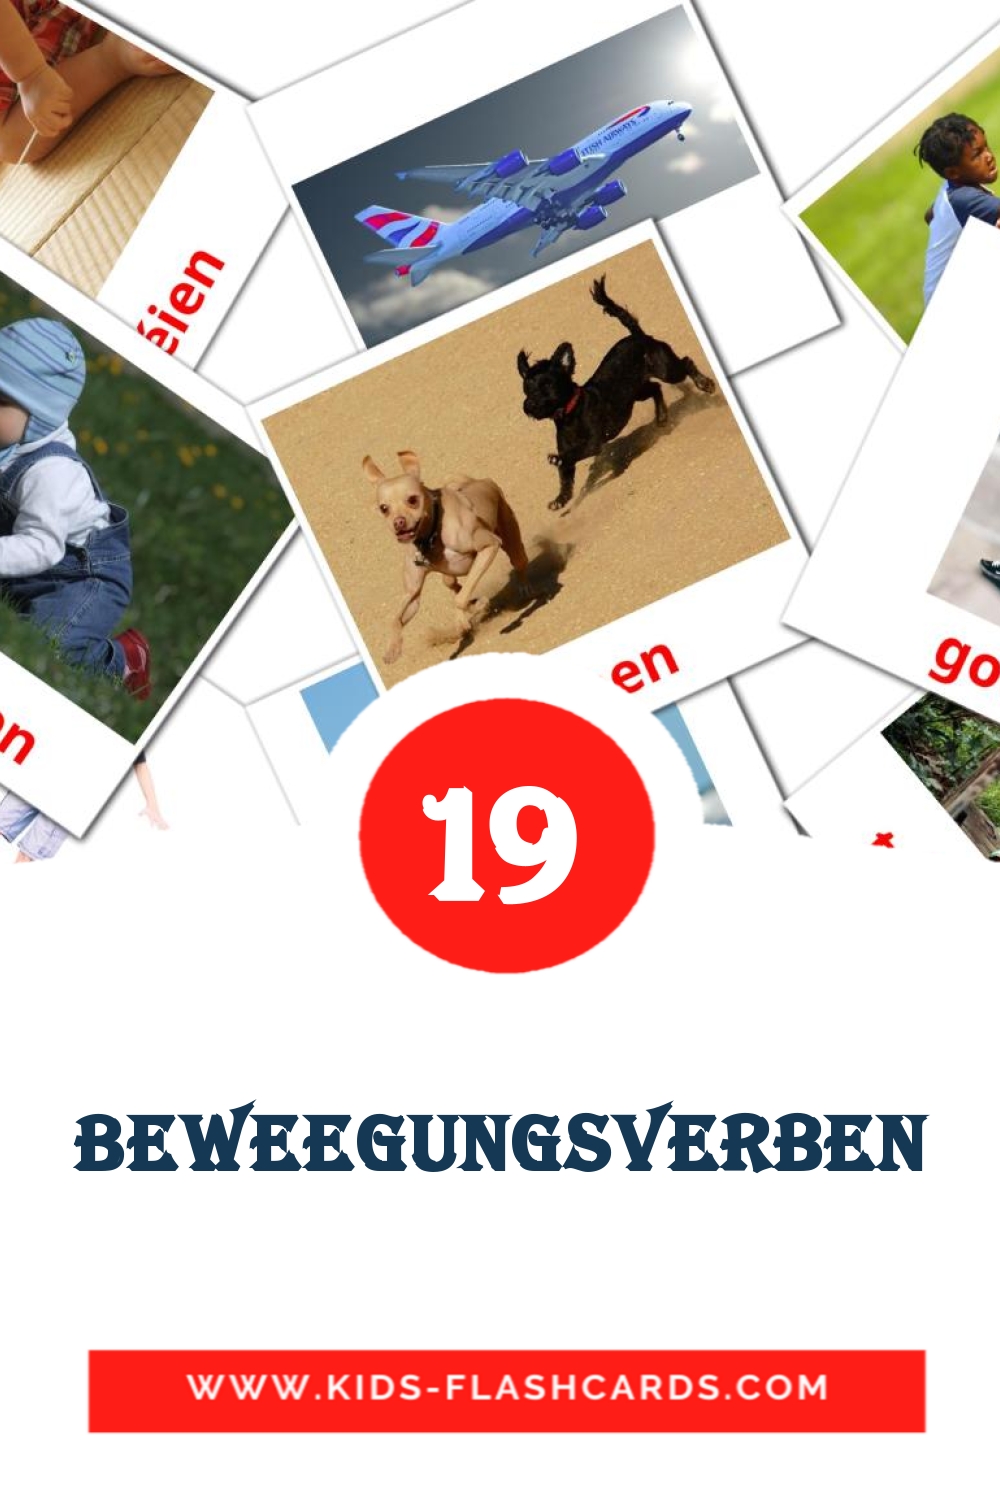 Beweegungsverben на люксембургском для Детского Сада (19 карточек)